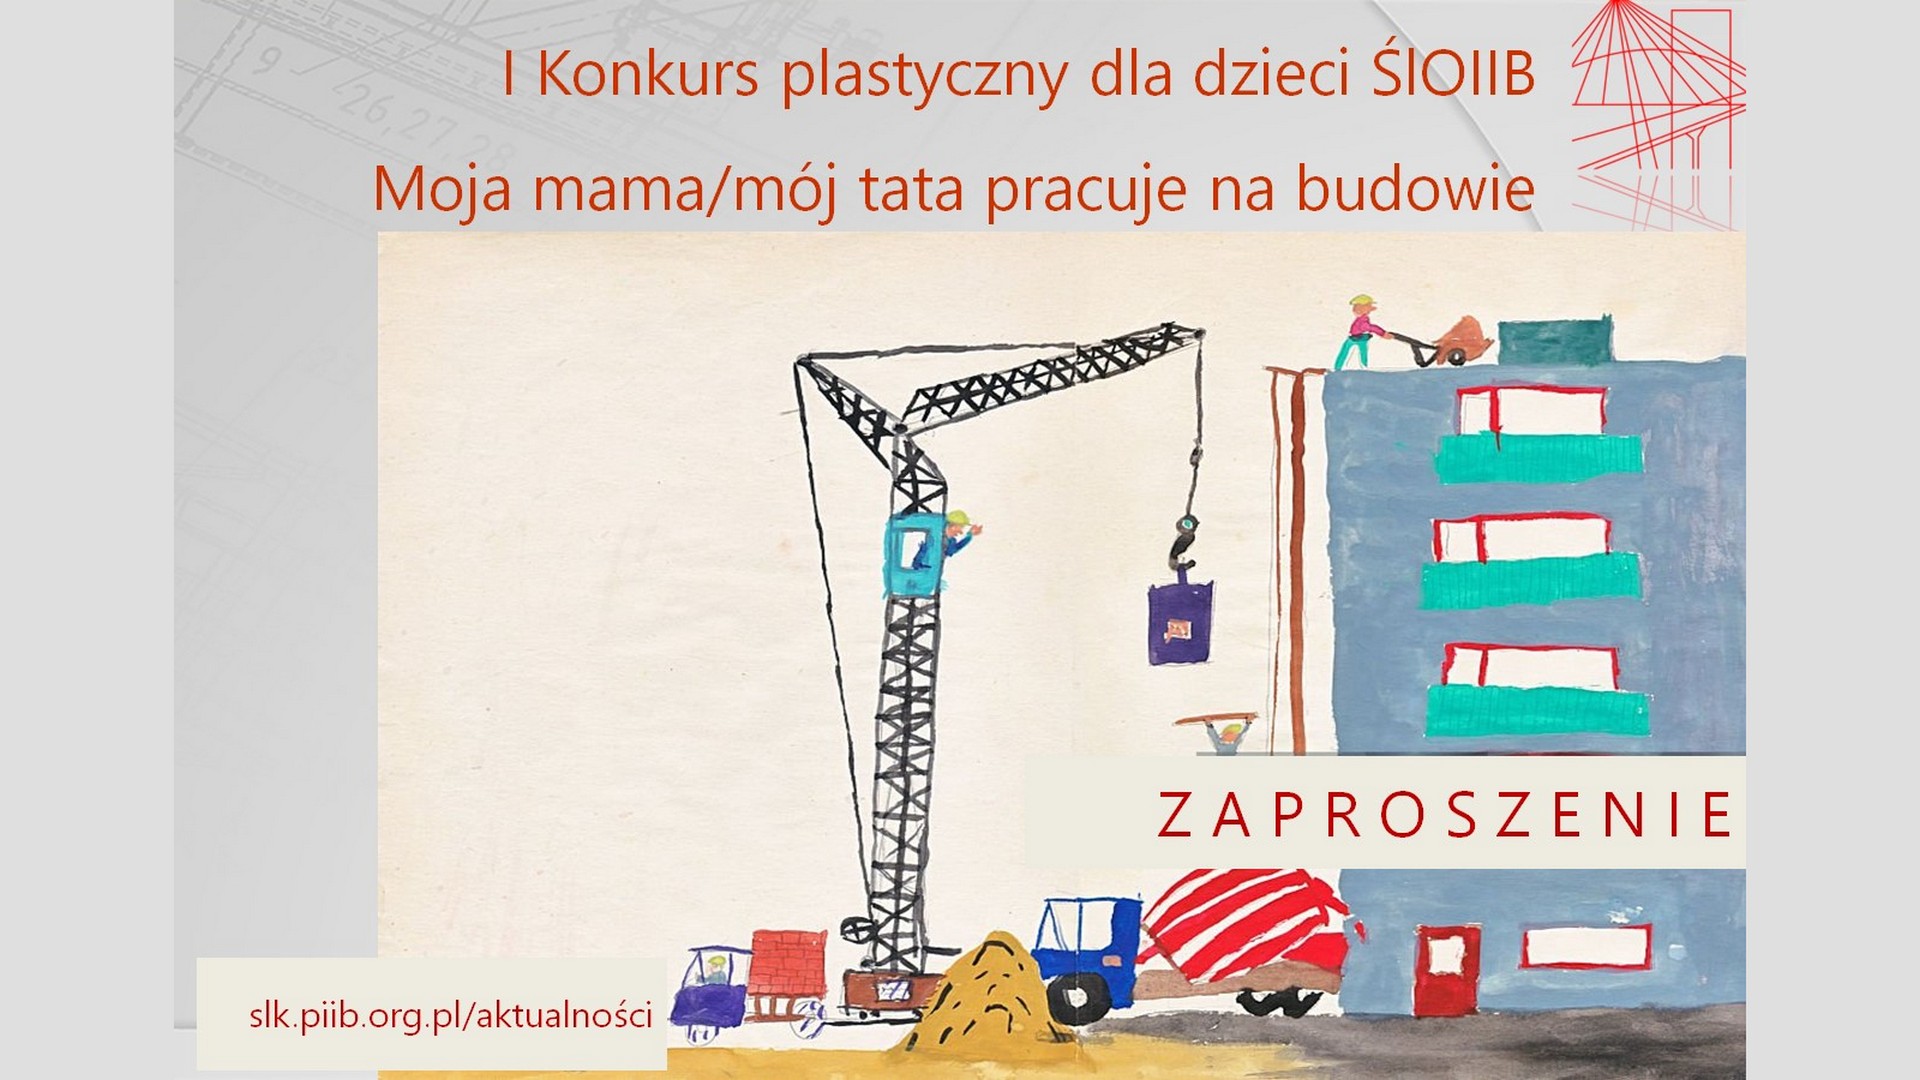 I edycja Konkursu Plastycznego pt. „Moja mama/ mój tata pracuje na budowie”. Zapraszamy serdecznie do wzięcia udziału!